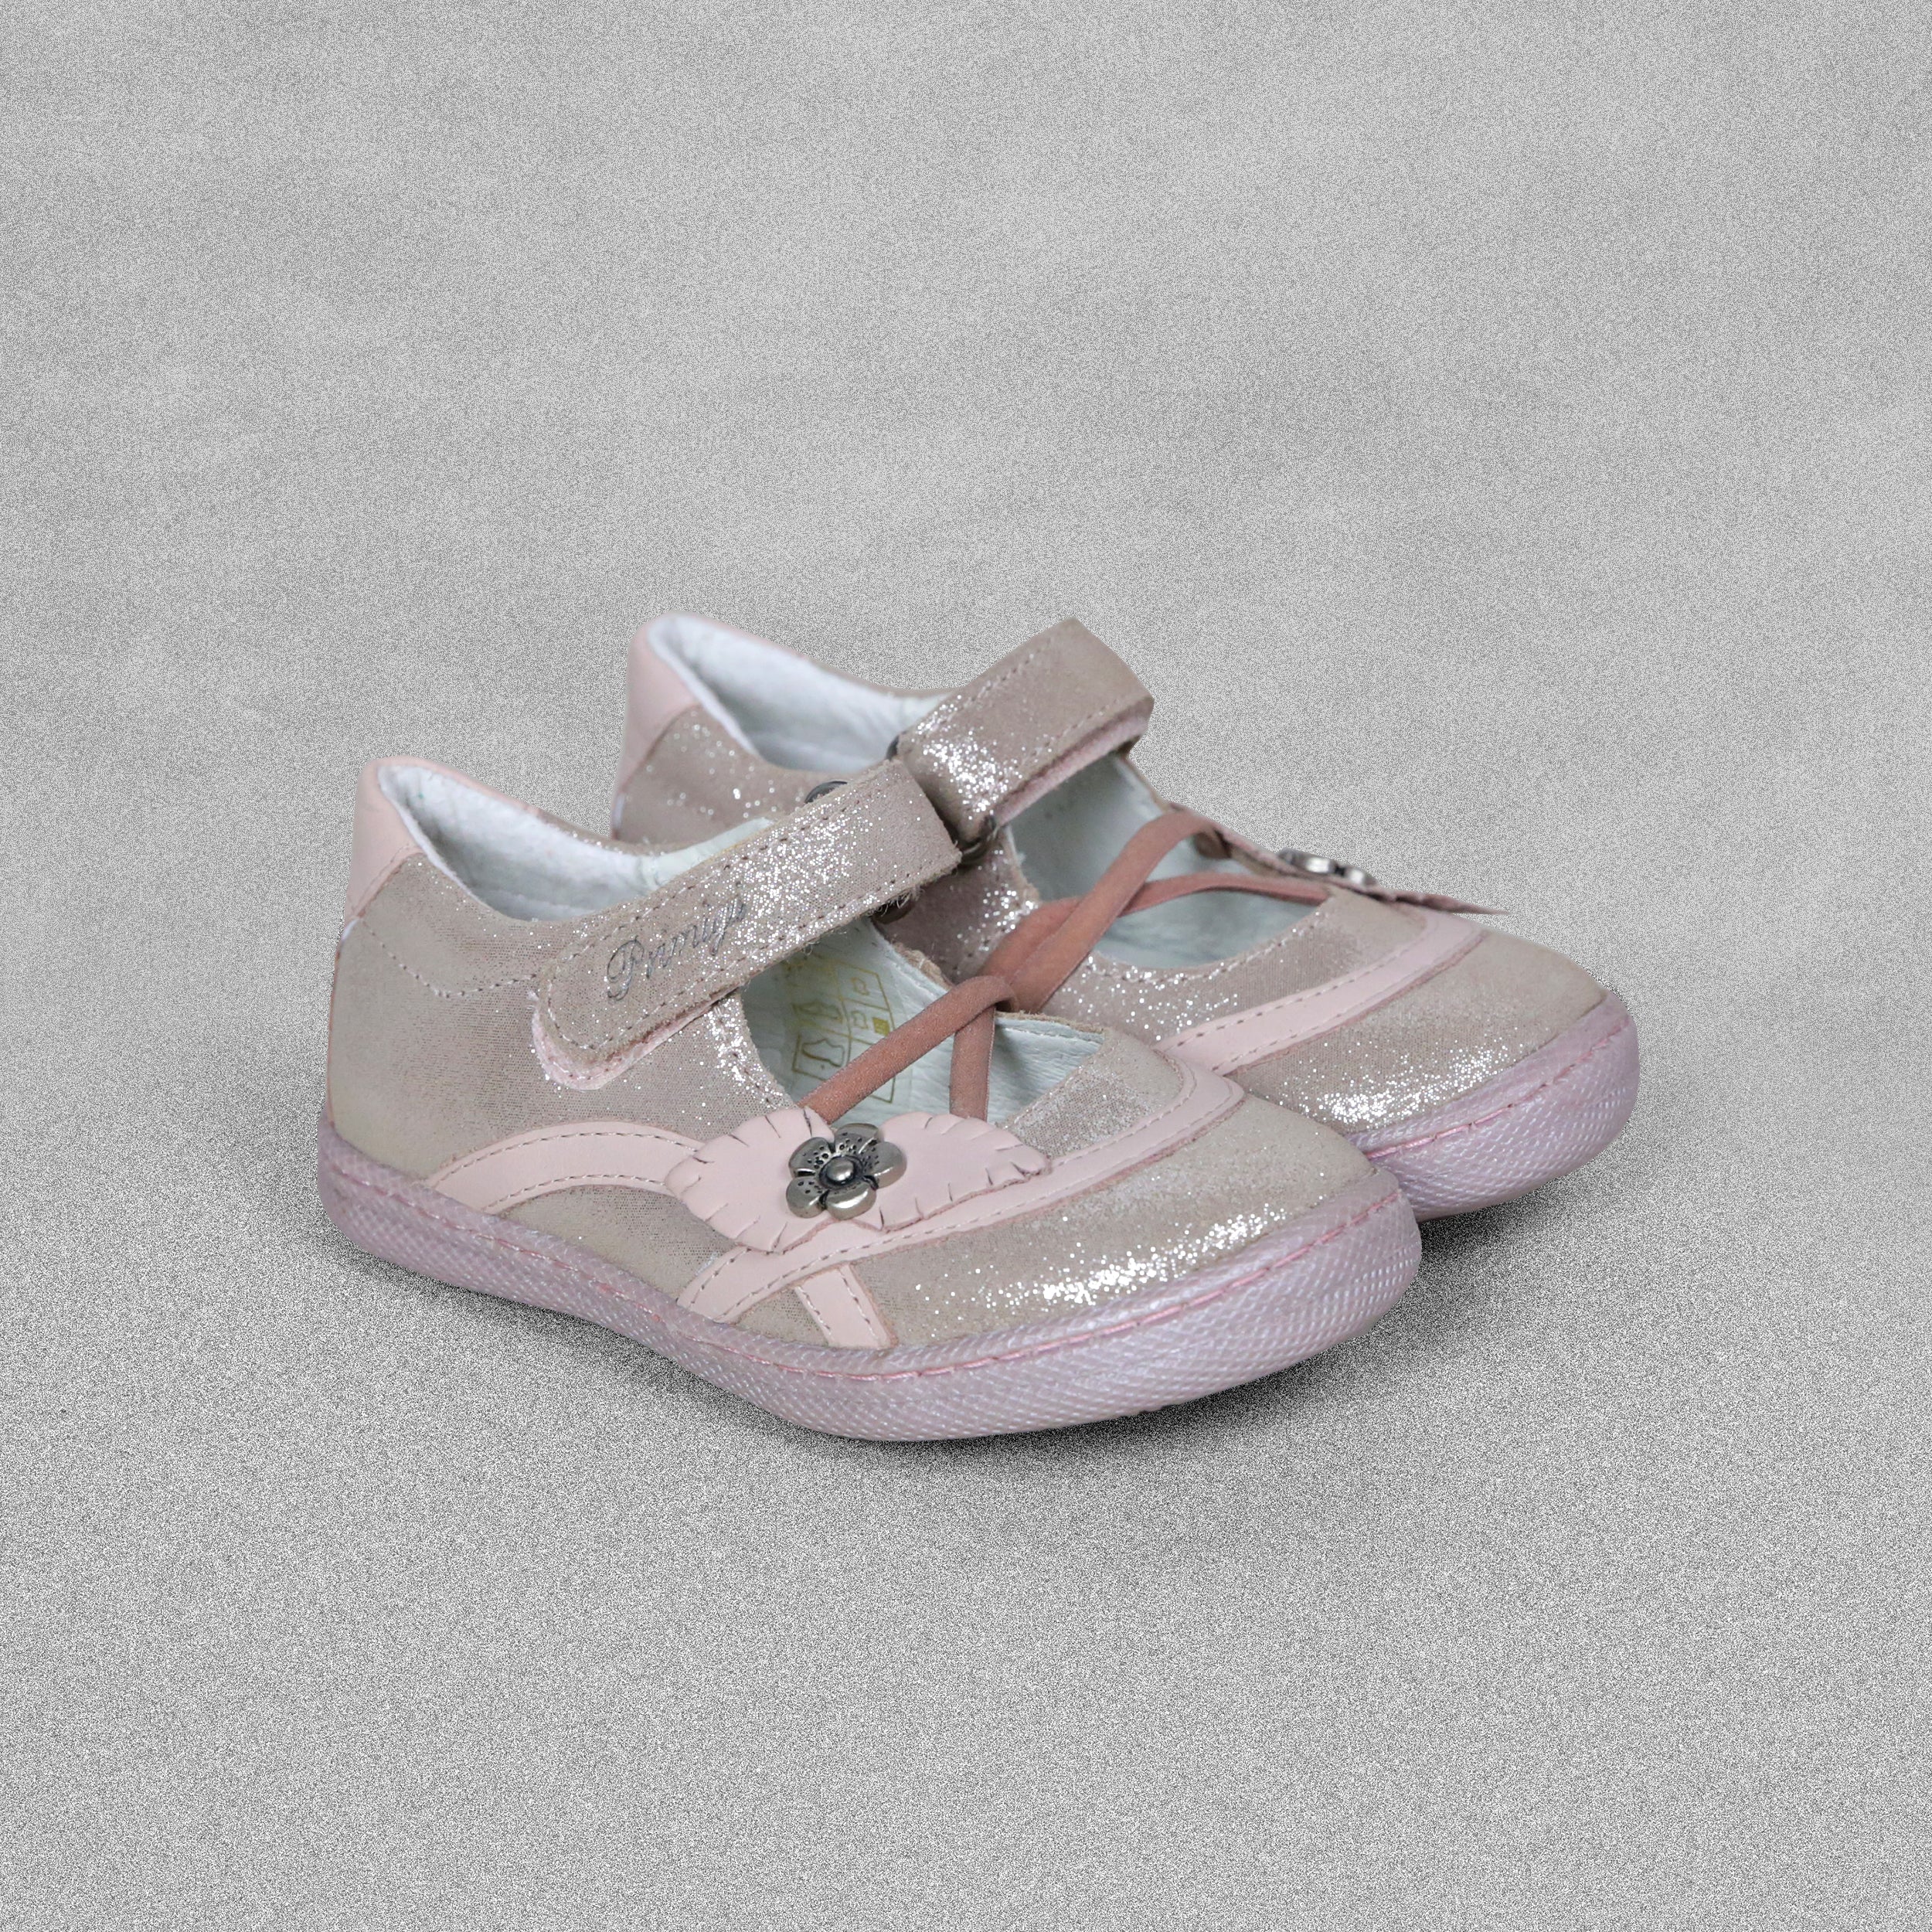 'Primigi' Girls Pink Mary Jane Shoes - UK Child Size 6 / EU 23